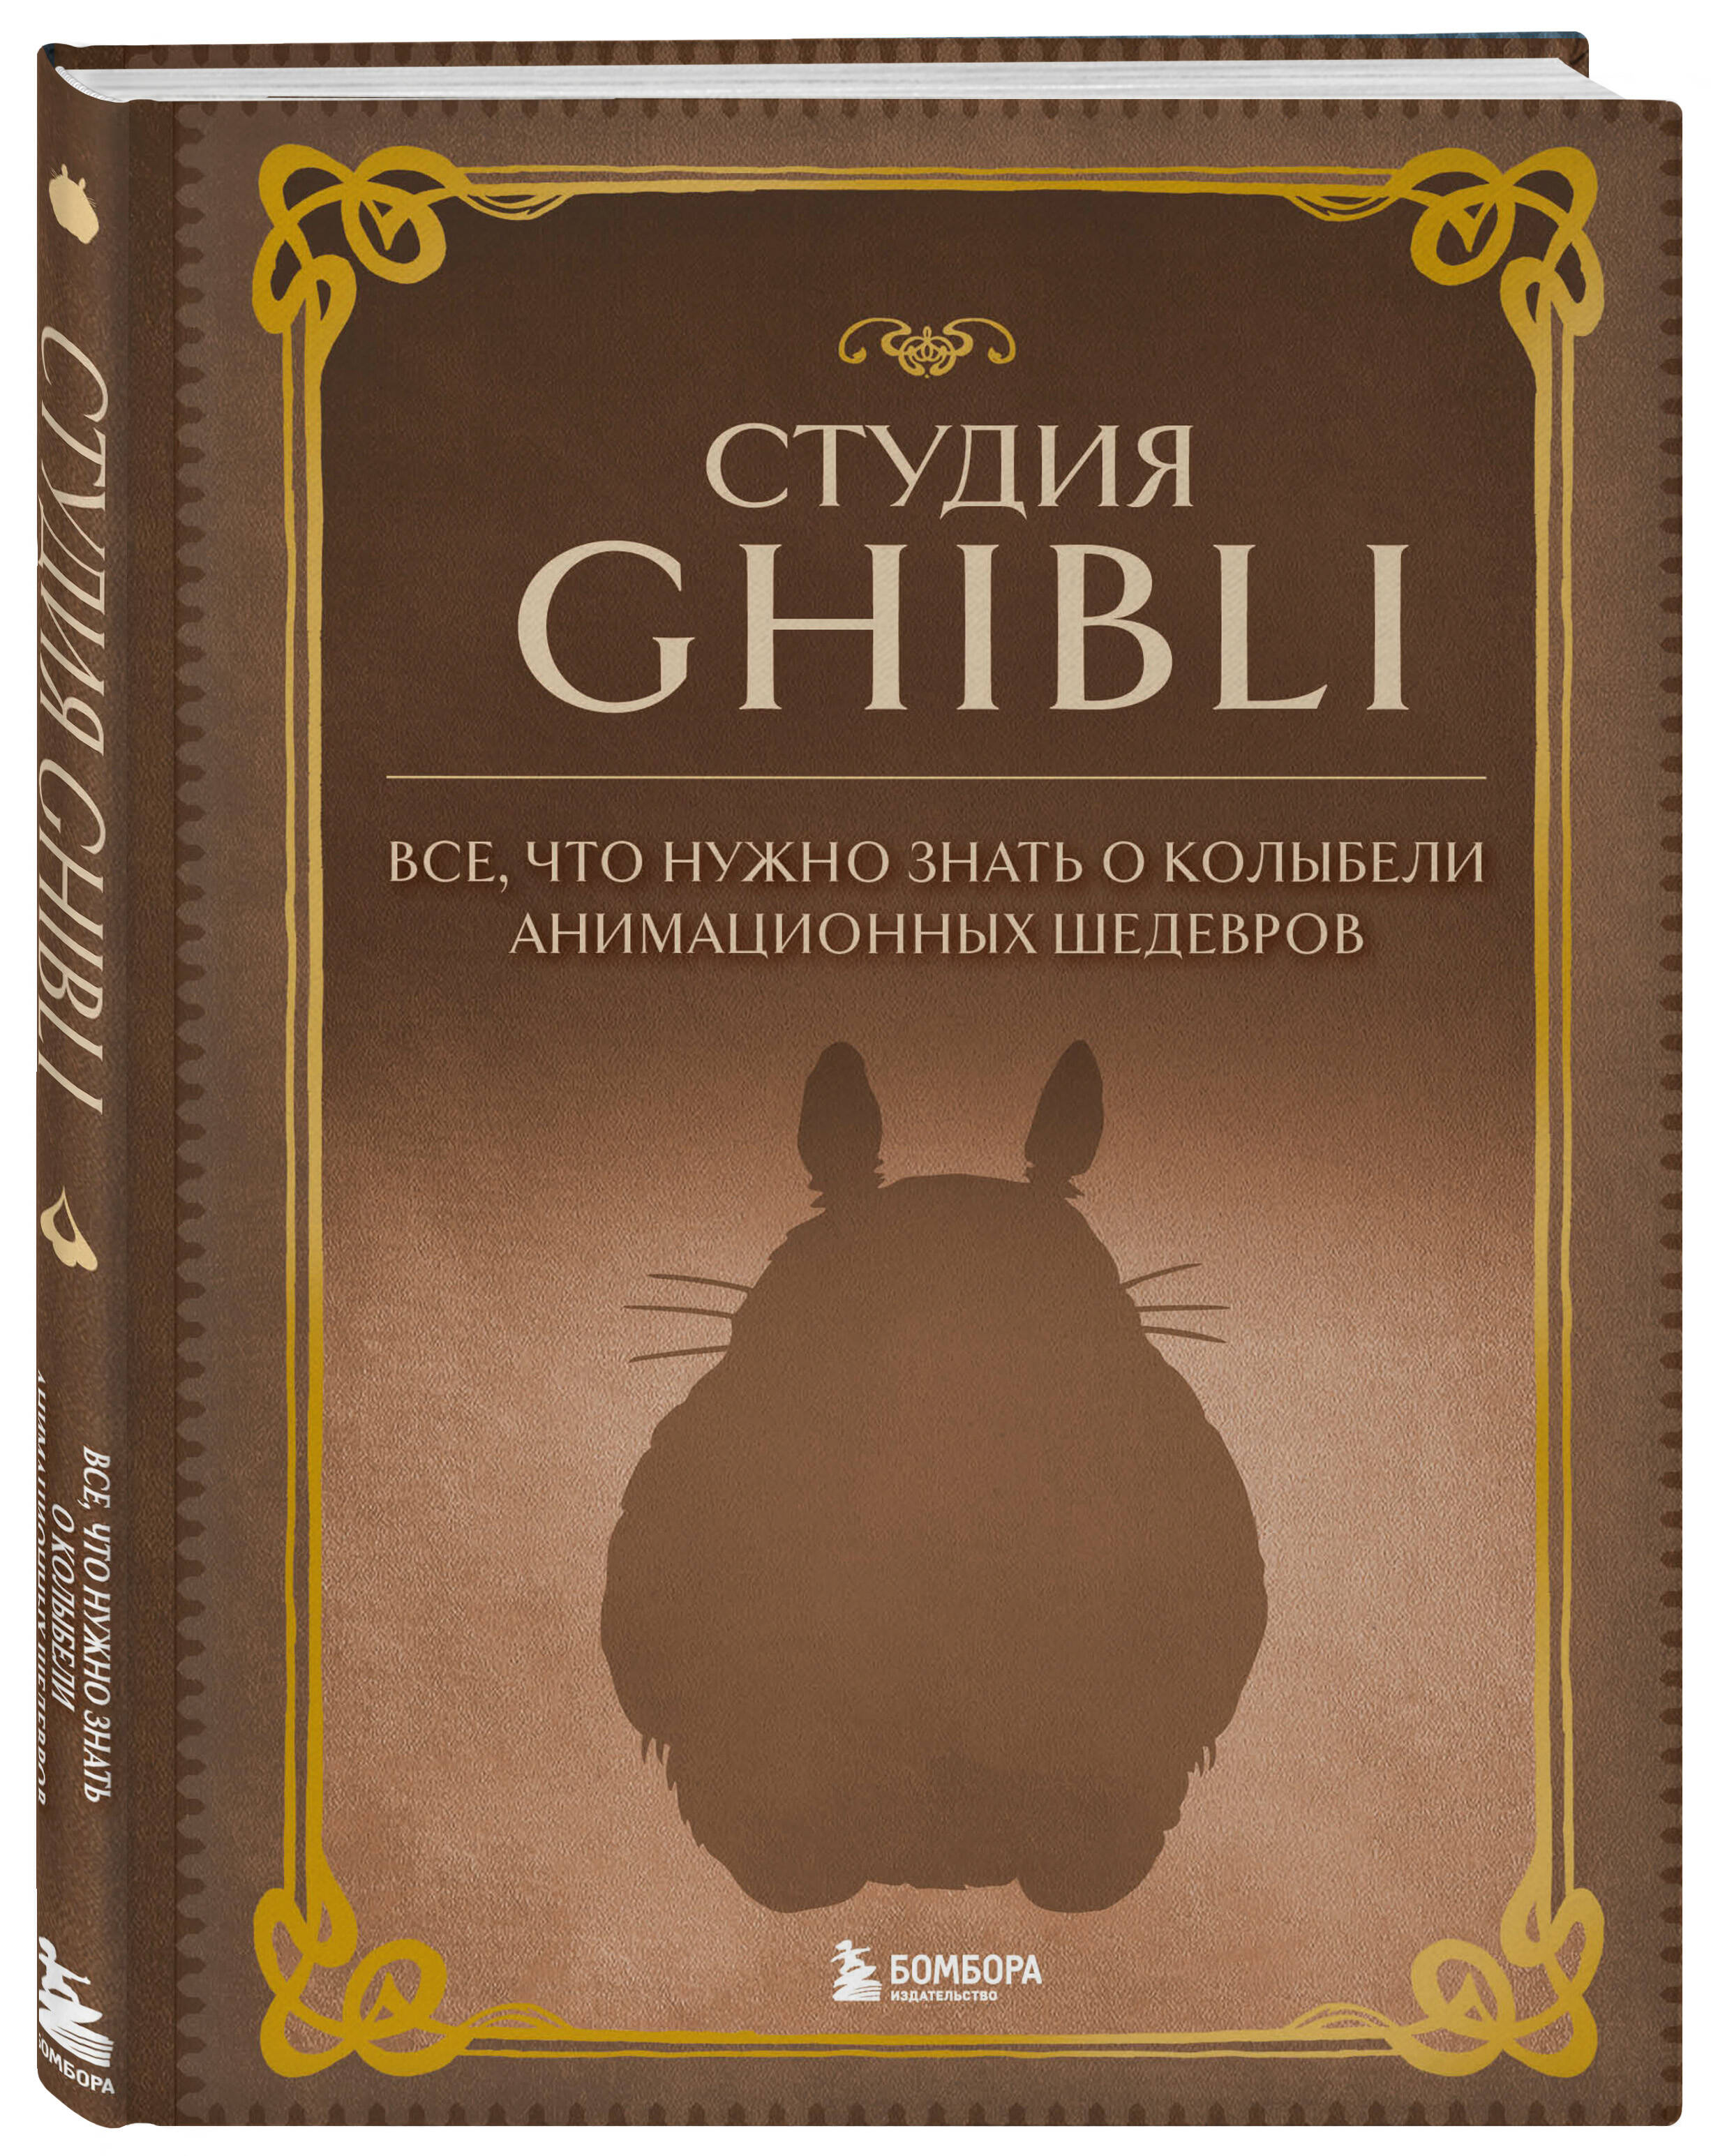 Гибли книга. Книжка гибли. Шедевры анимации. Книга студия Ghibli купить. Книга рецептов гибли.